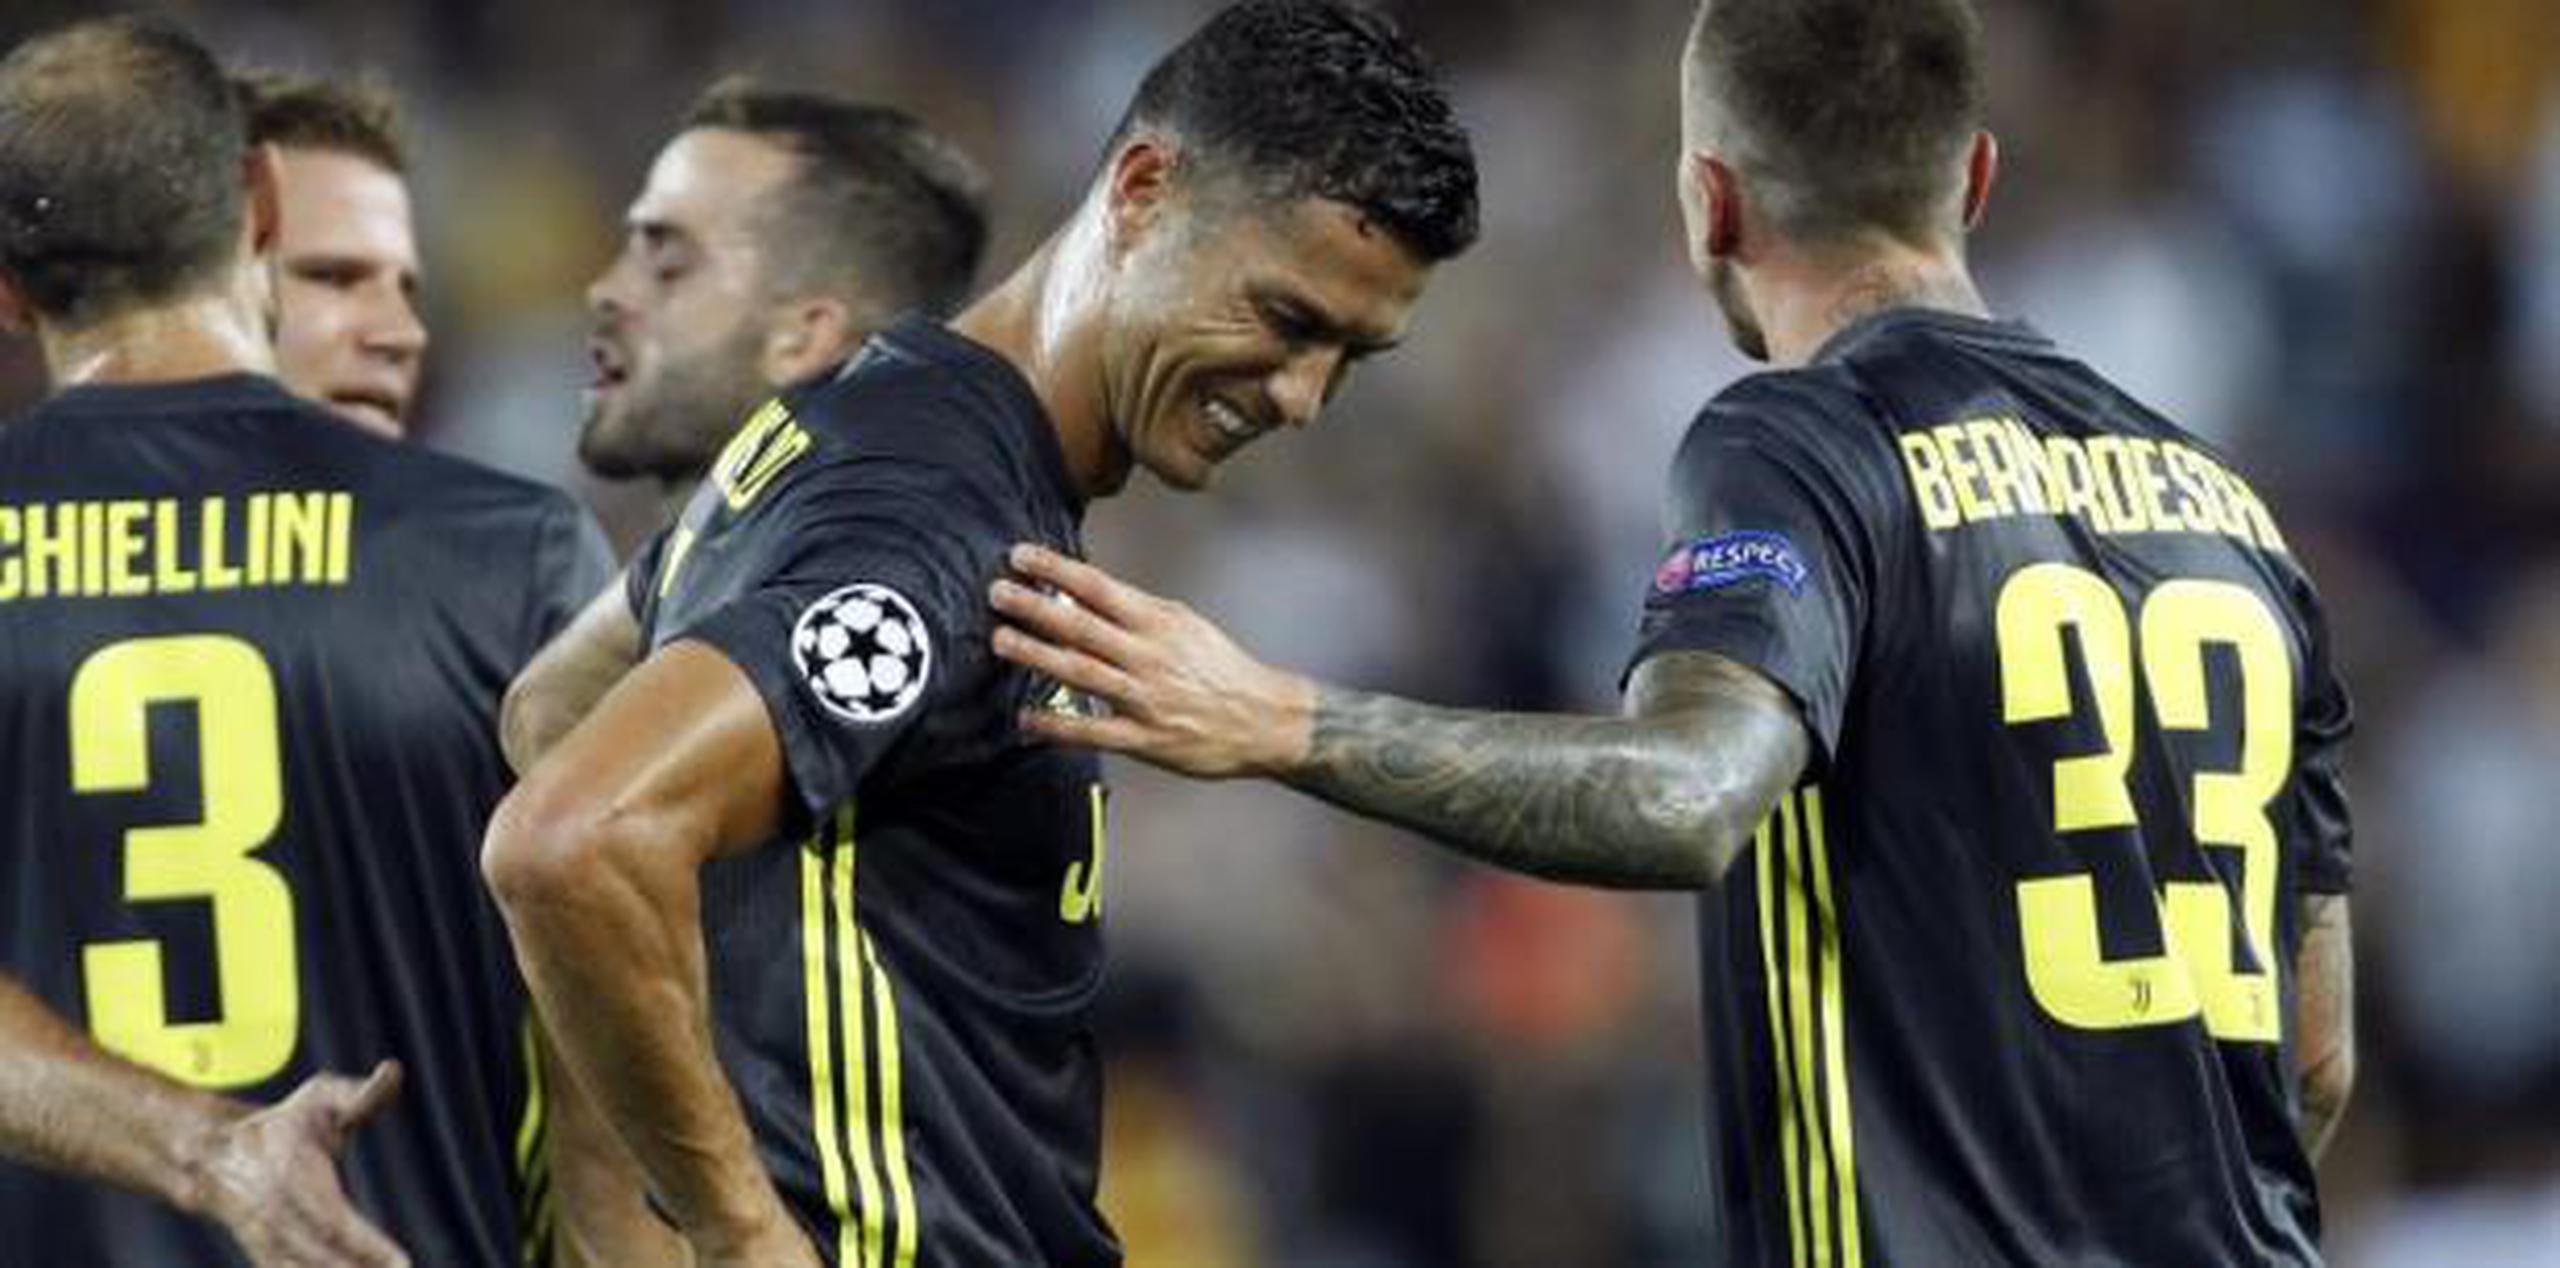 Mientras Cristiano Ronaldo se iba llorando, los hinchas locales lo insultaban. (AP)